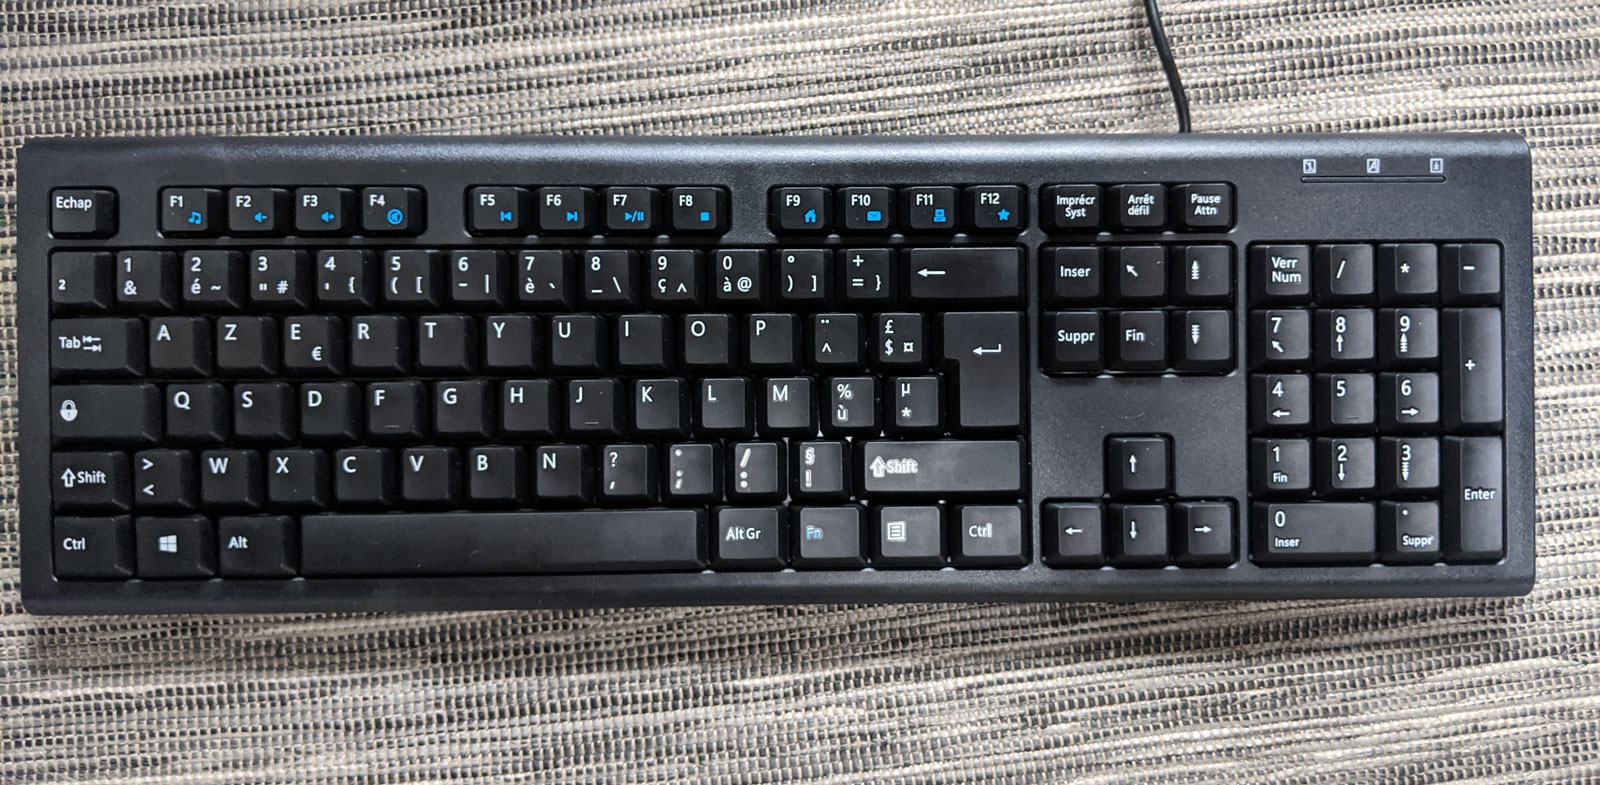 Photo of my AZERTY keyboard